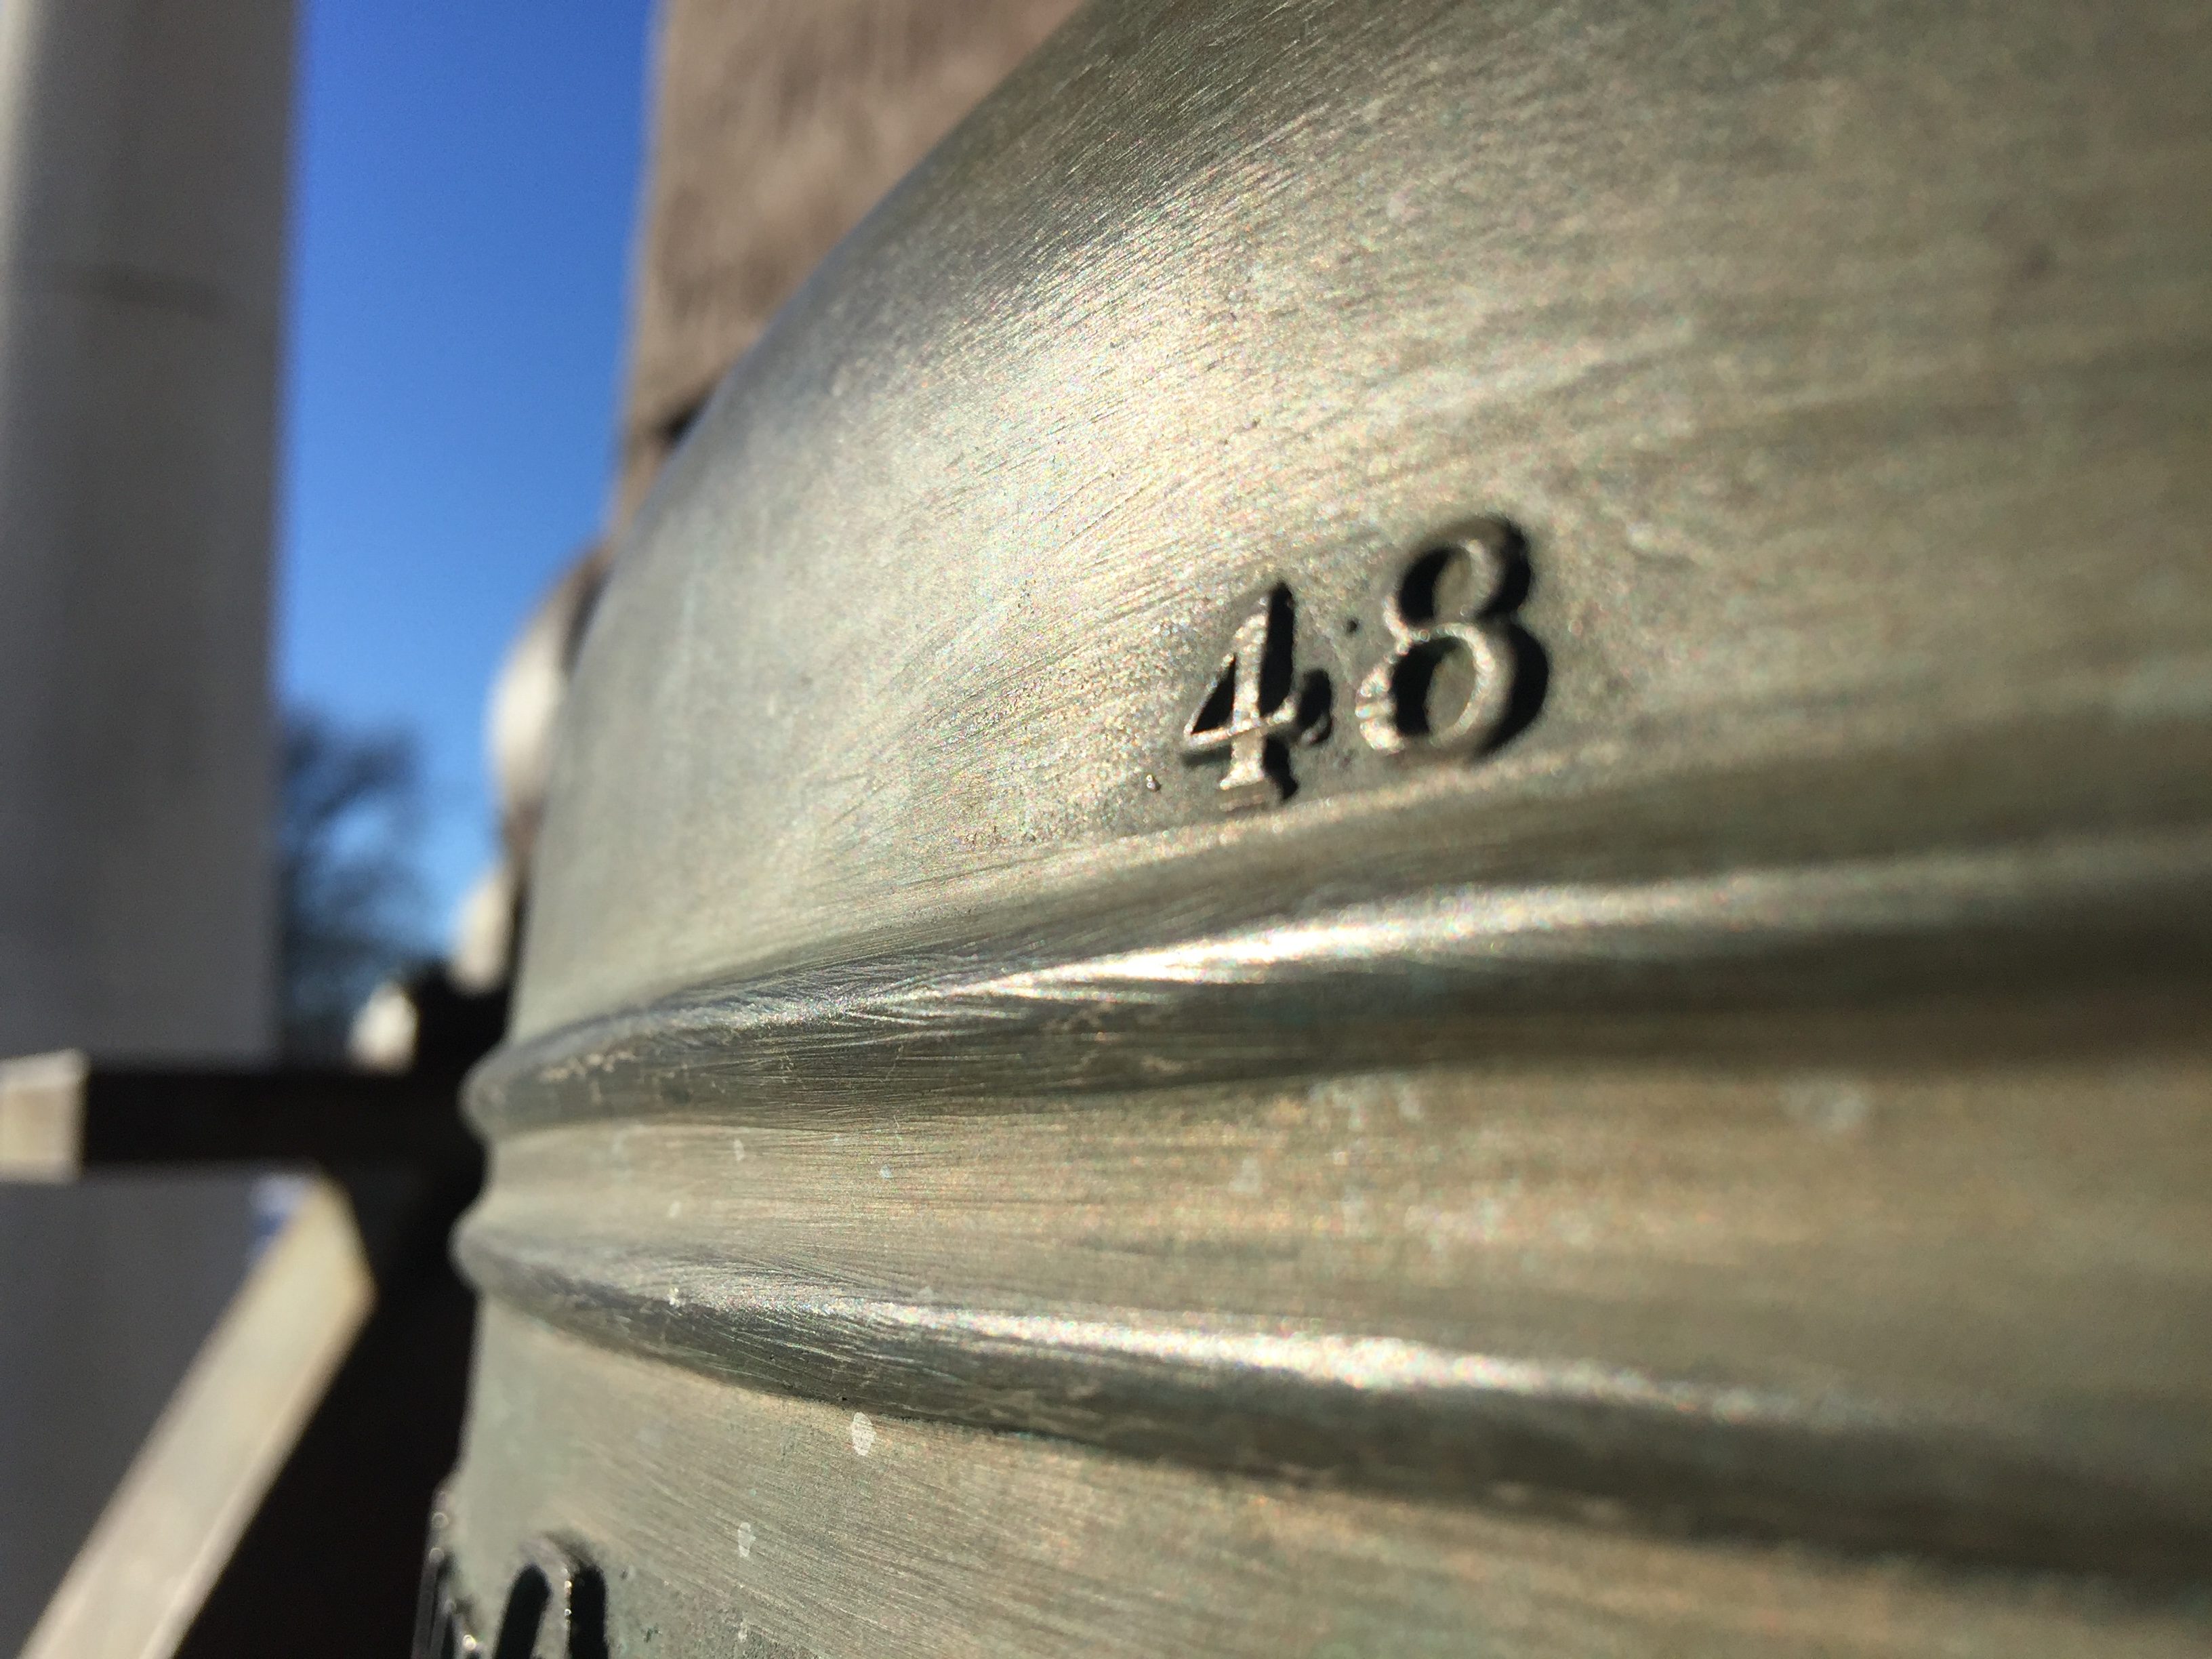 Nebraska Liberty Bell replica